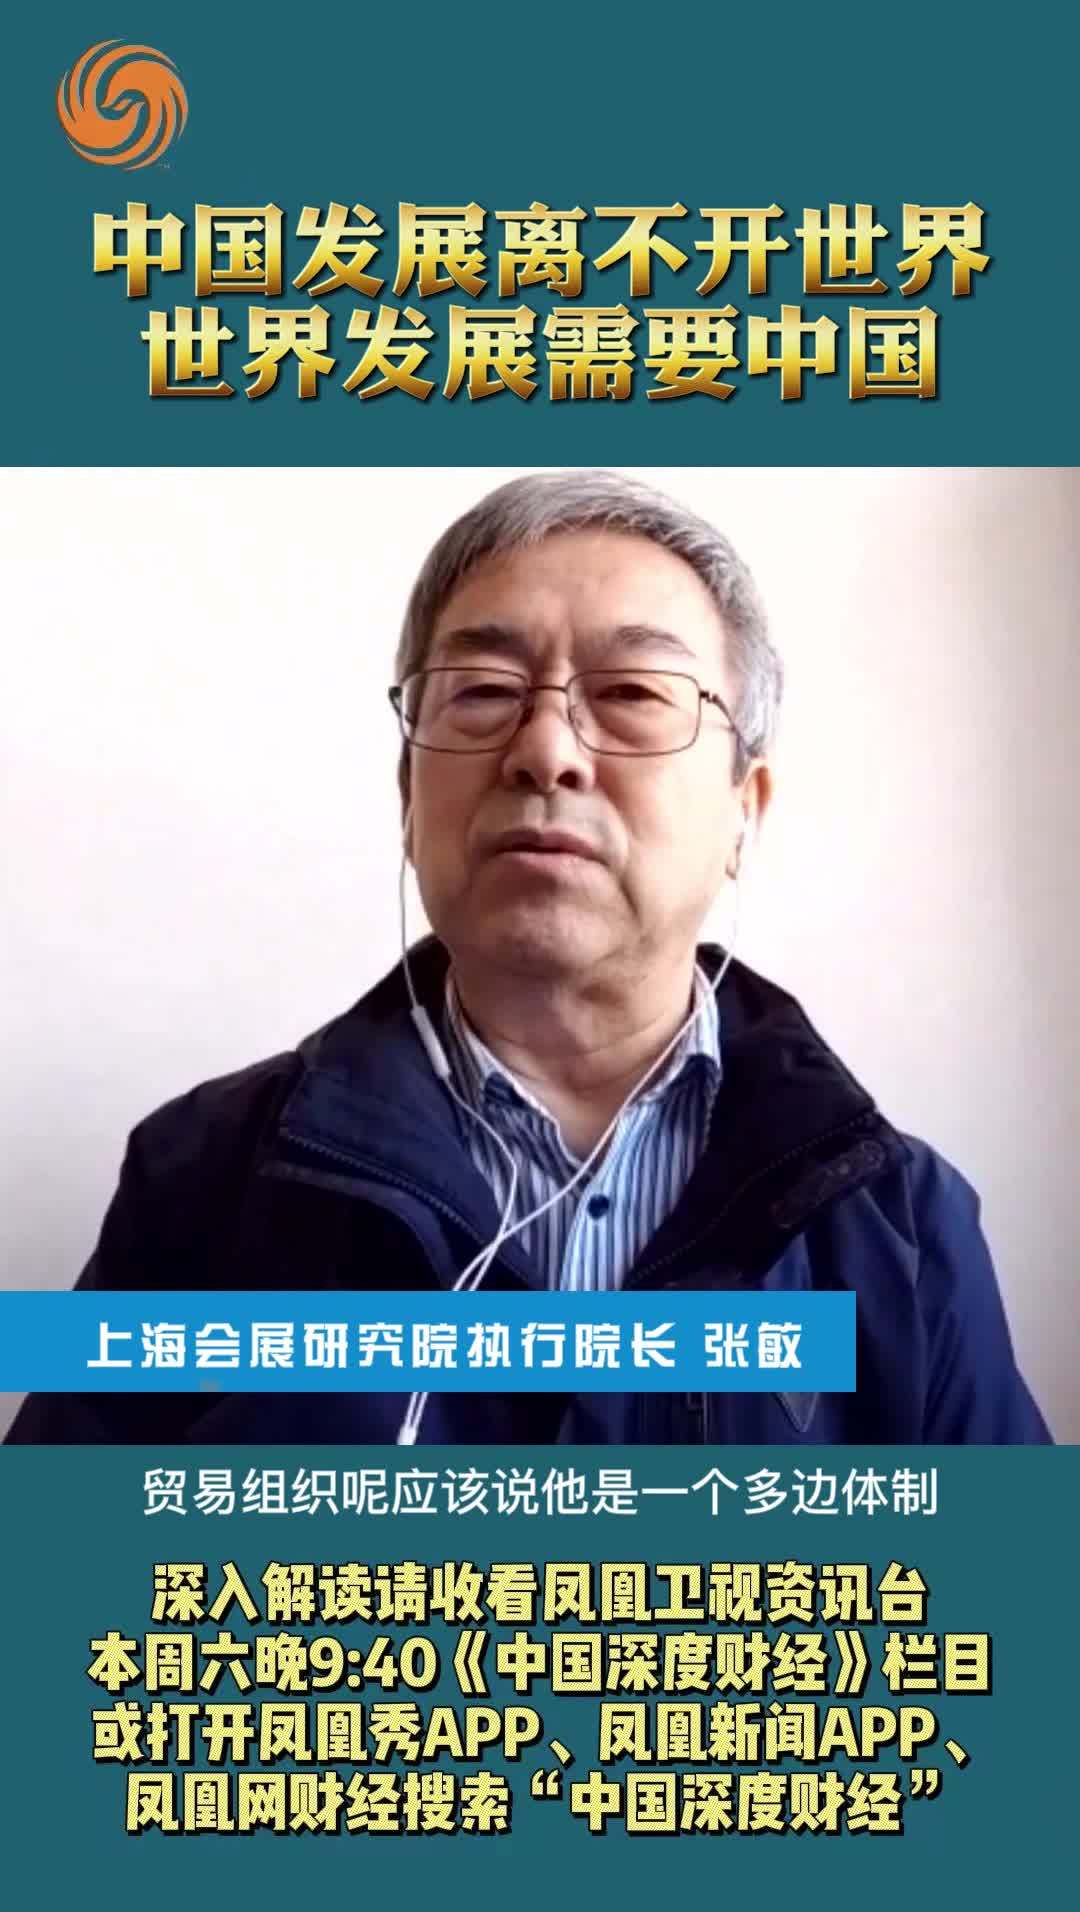 上海会展研究院执行院长张敏：中国发展离不开世界 世界发展需要中国